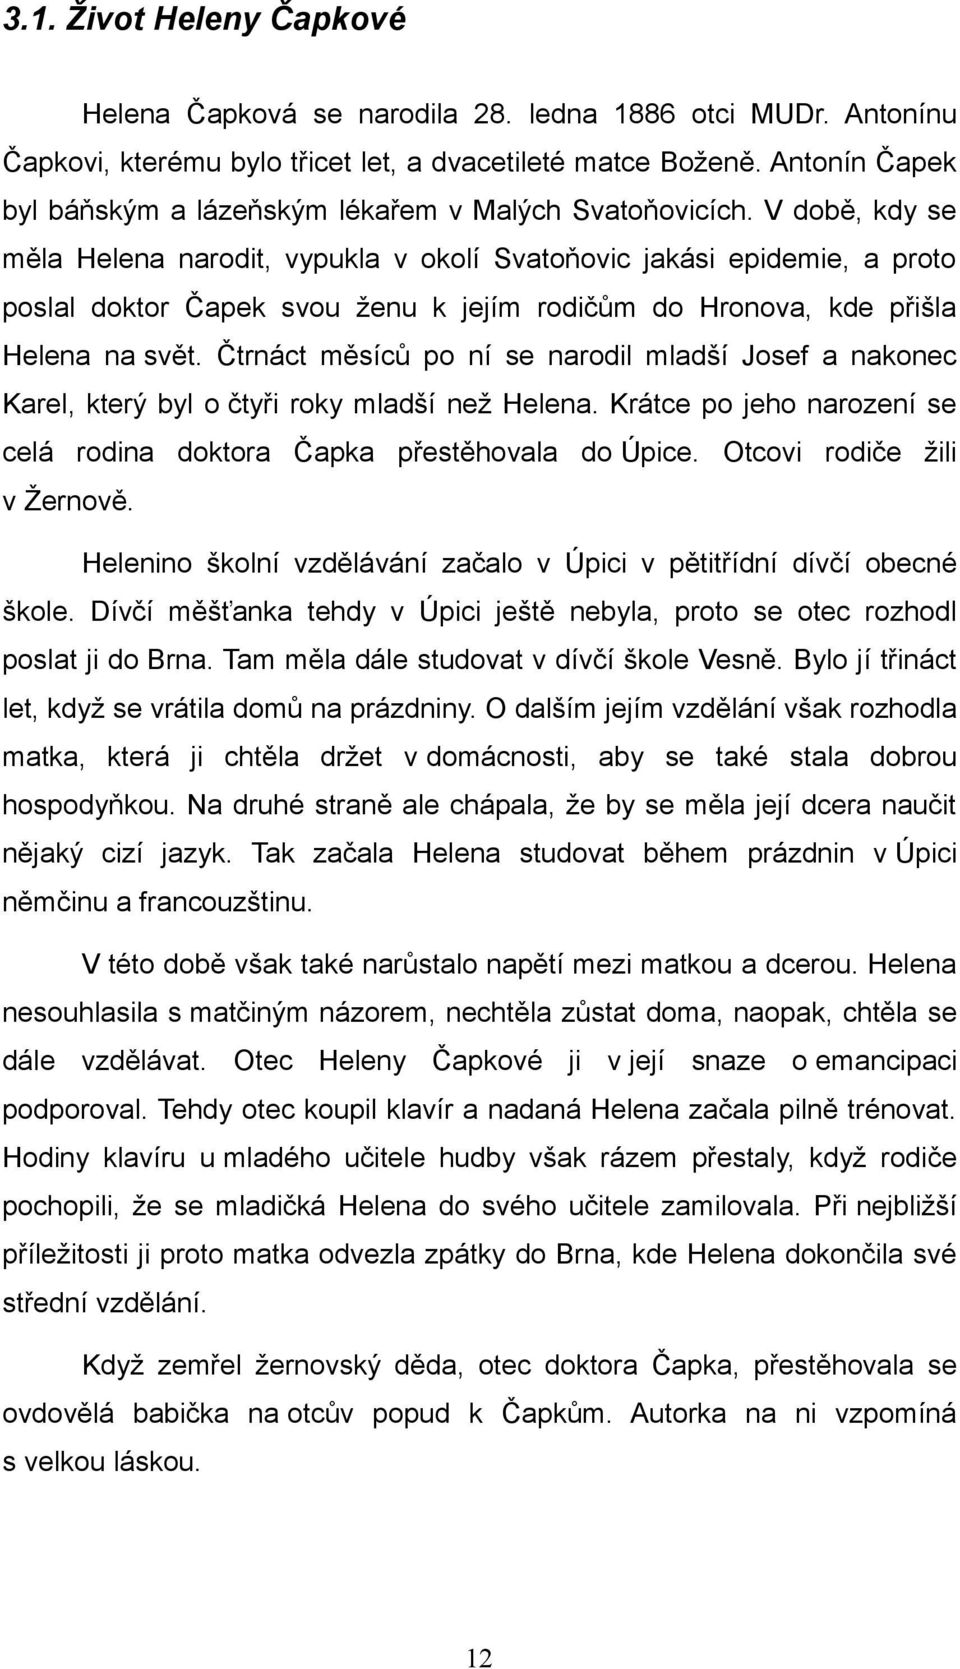 V době, kdy se měla Helena narodit, vypukla v okolí Svatoňovic jakási epidemie, a proto poslal doktor Čapek svou ženu k jejím rodičům do Hronova, kde přišla Helena na svět.